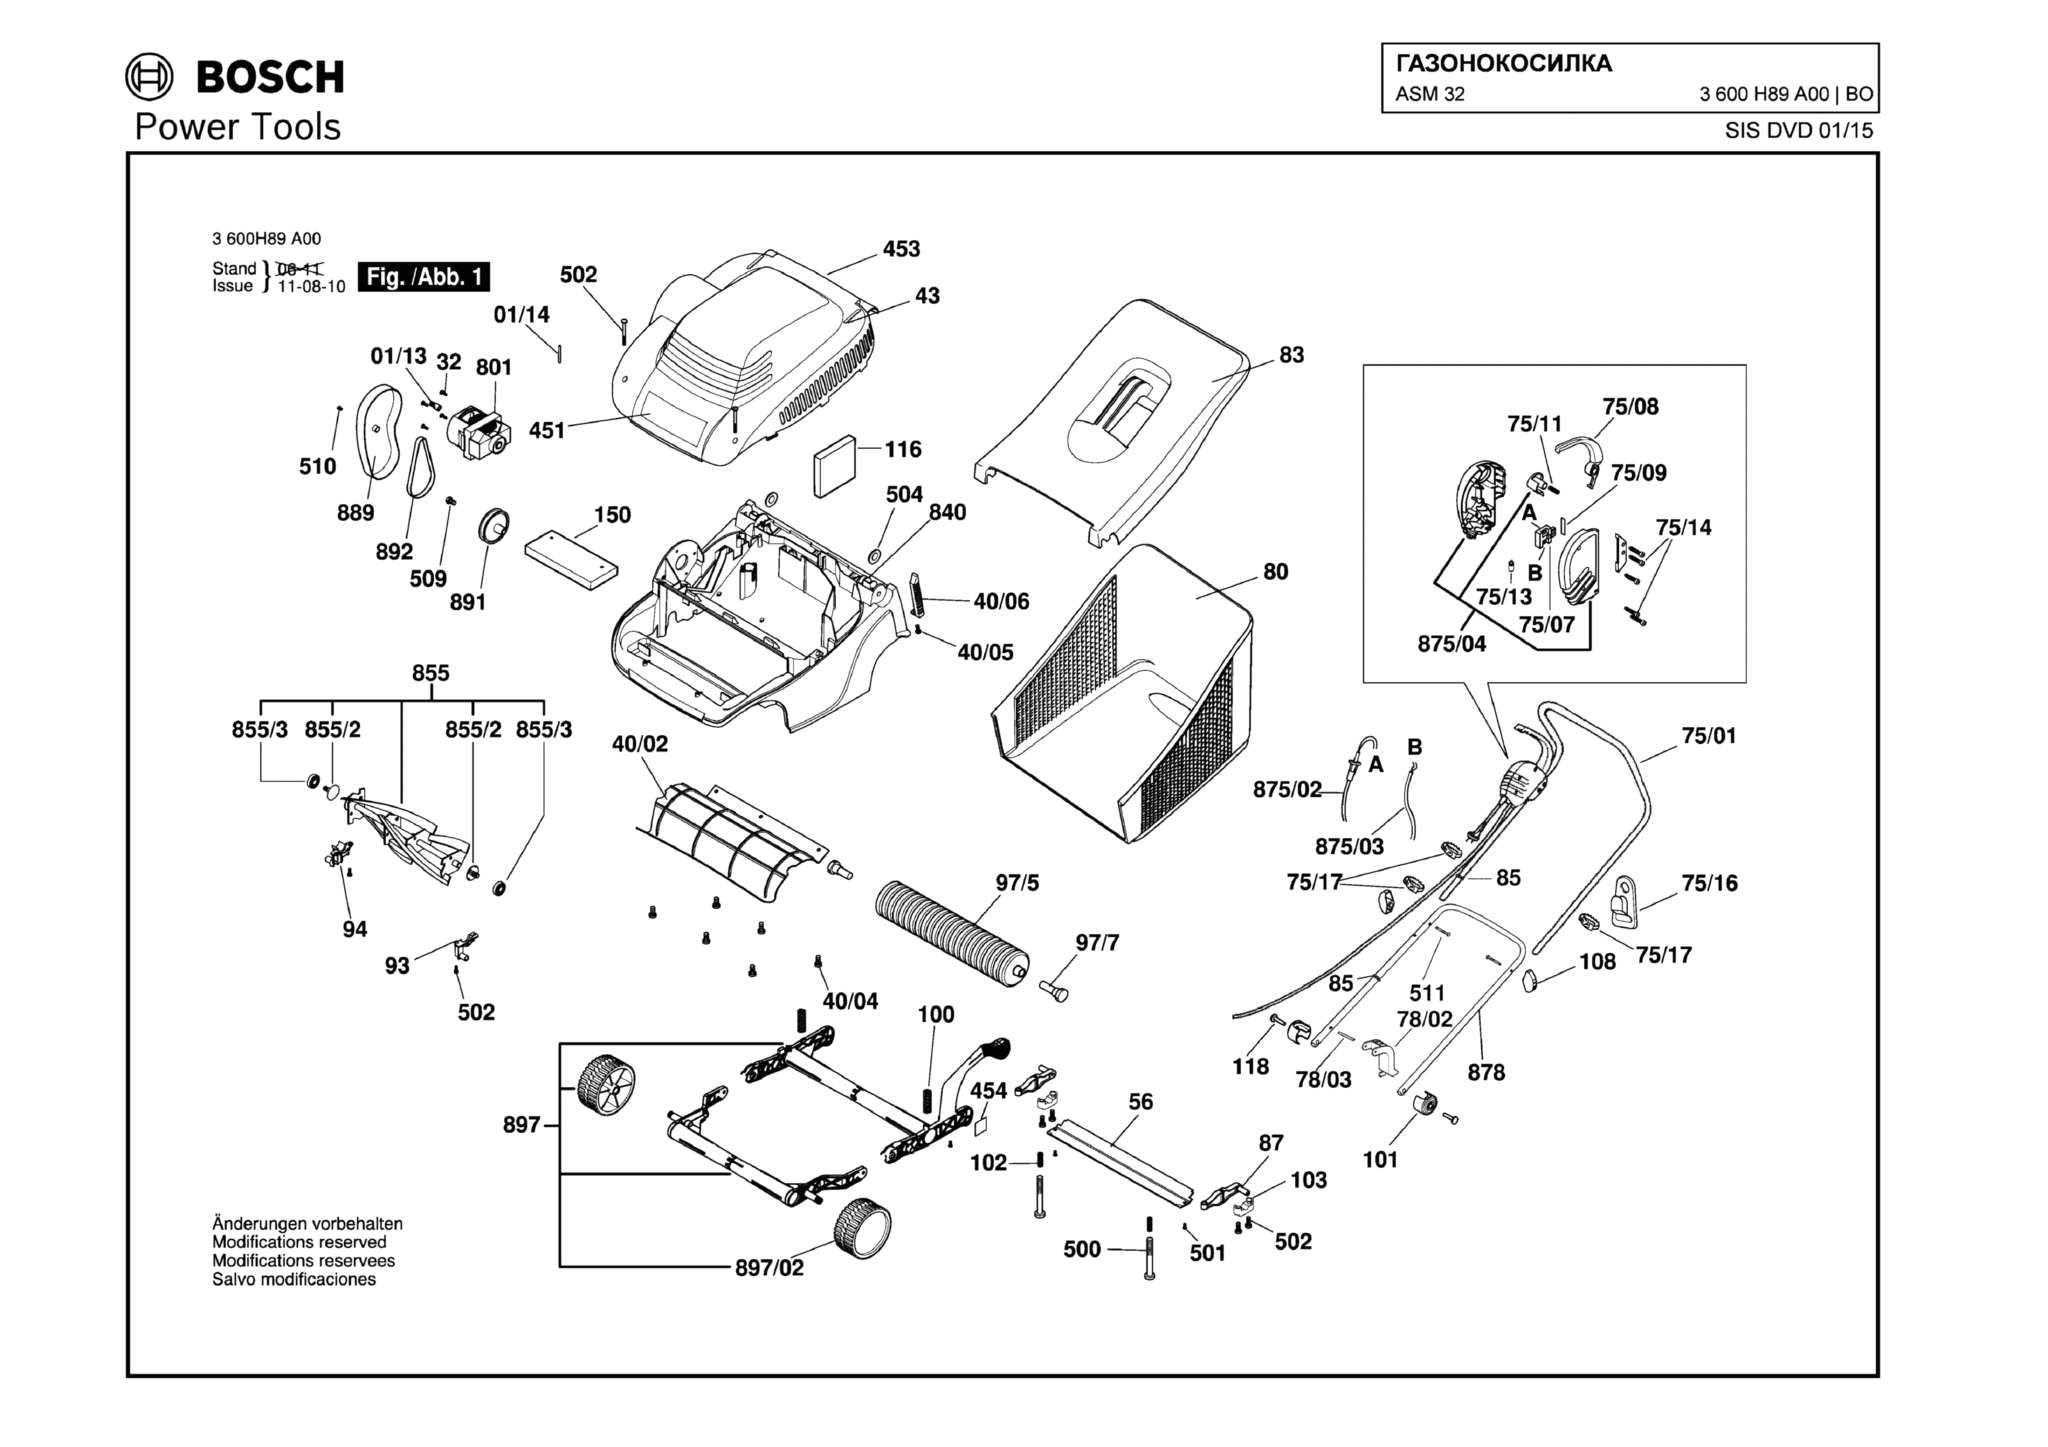 Запчасти, схема и деталировка Bosch ASM 32 (ТИП 3600H89A00)